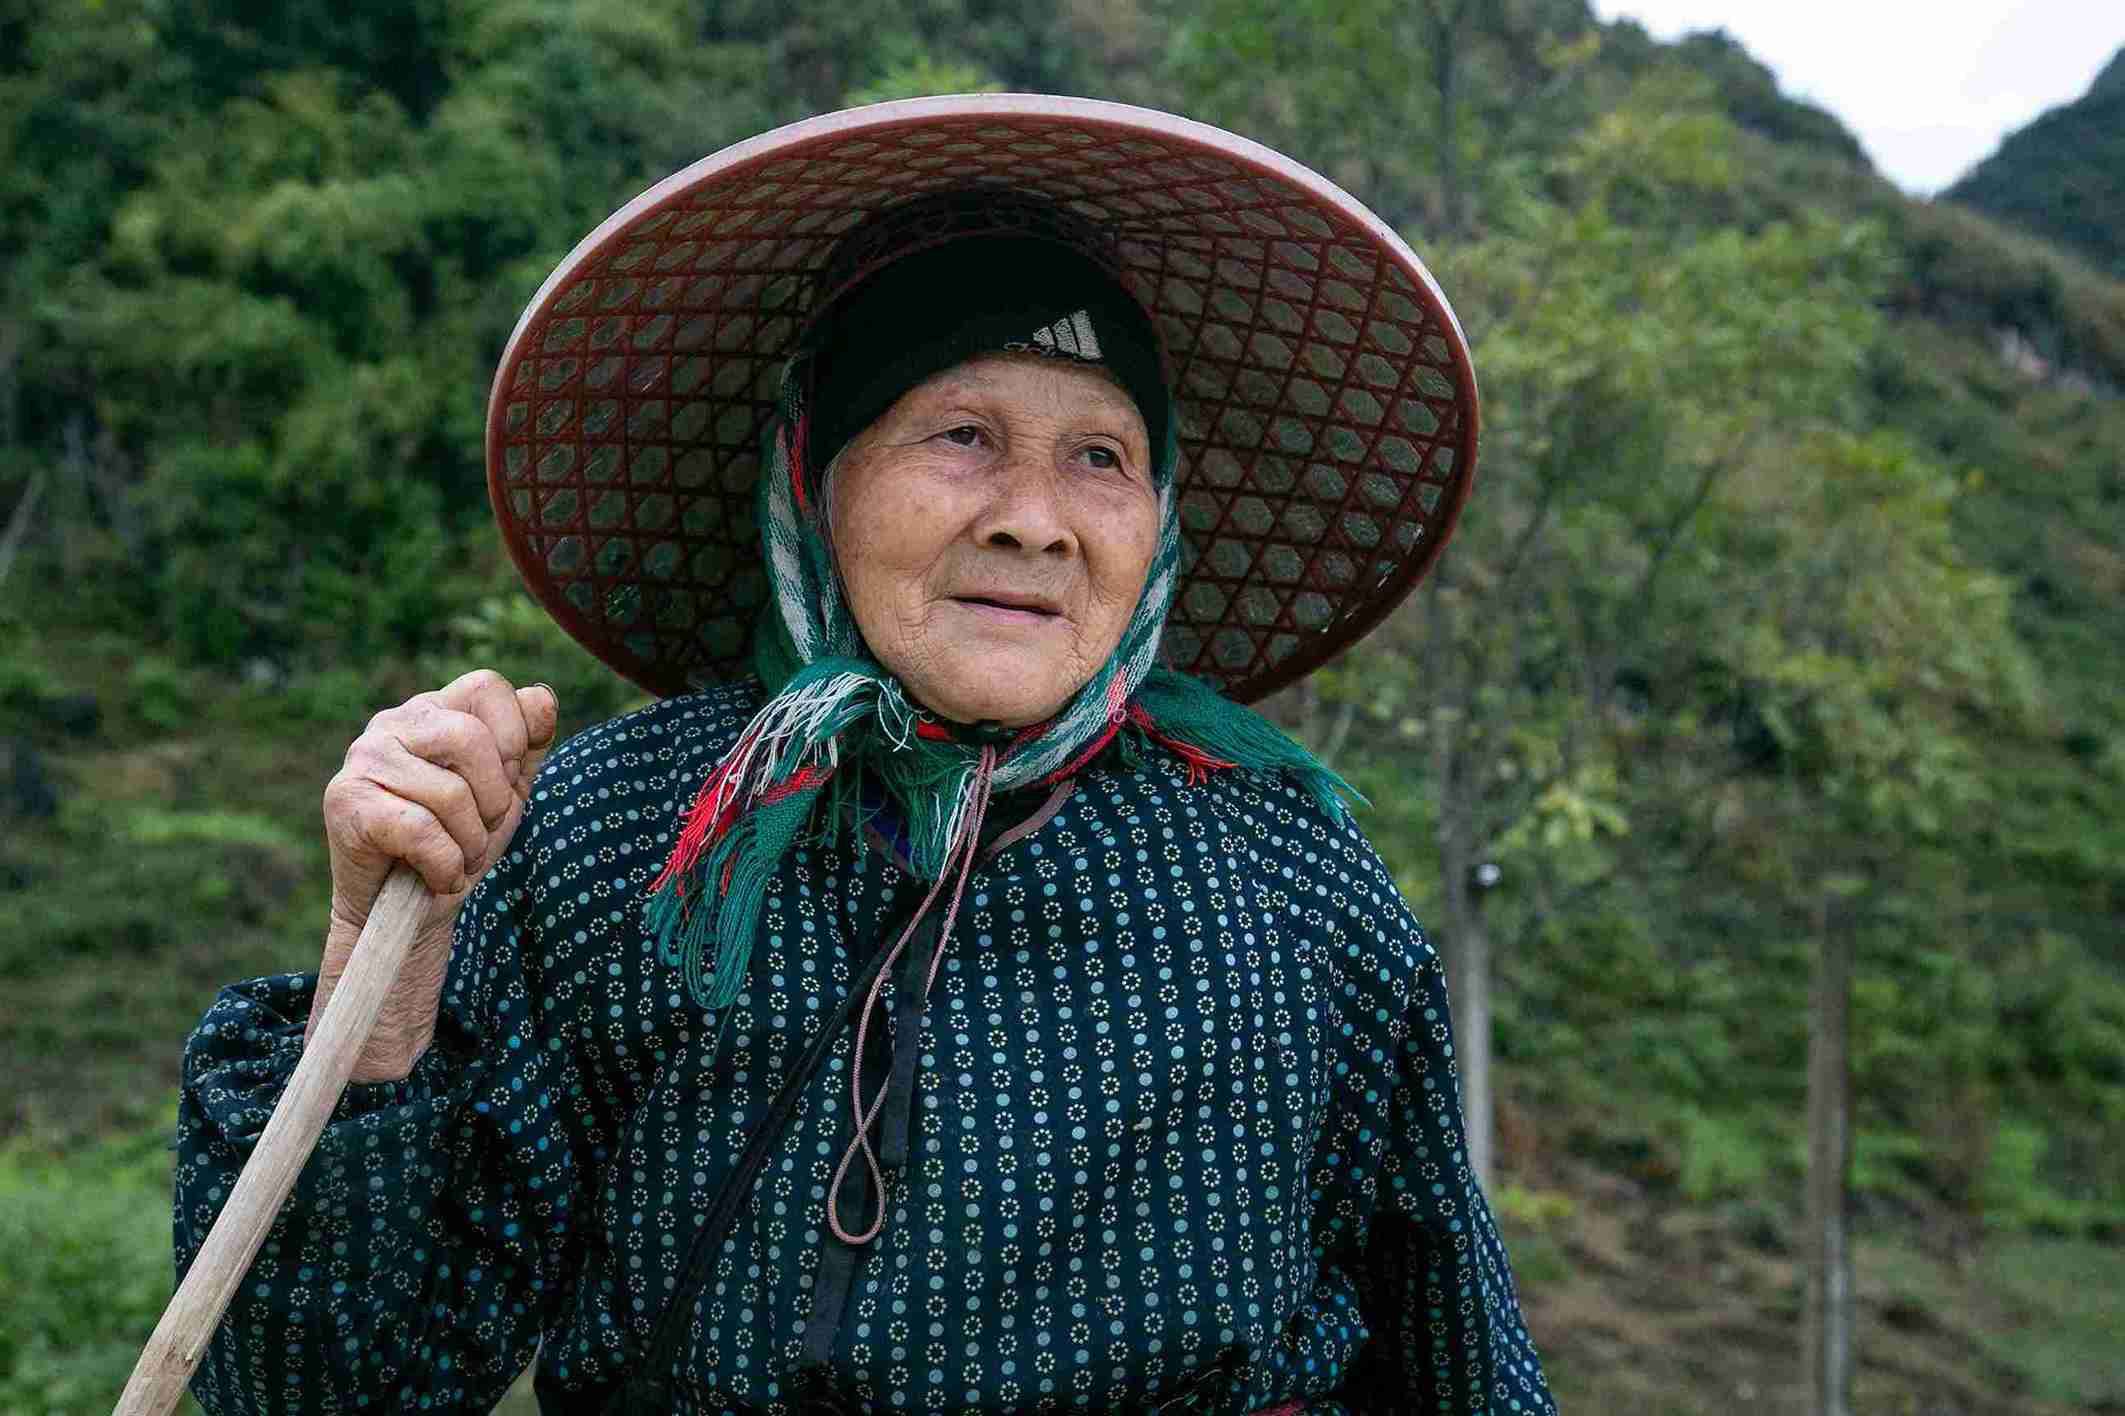 Chăn nuôi cũng chật vật vì khô hạn, bà Nông Thị Kiềm (xã Thượng Thôn) chia sẻ: “Năm mới ở đây cũng gần như ngày thường, mọi người phải tranh thủ để làm đất trên nương, kịp gieo hạt khi đất còn ẩm“.